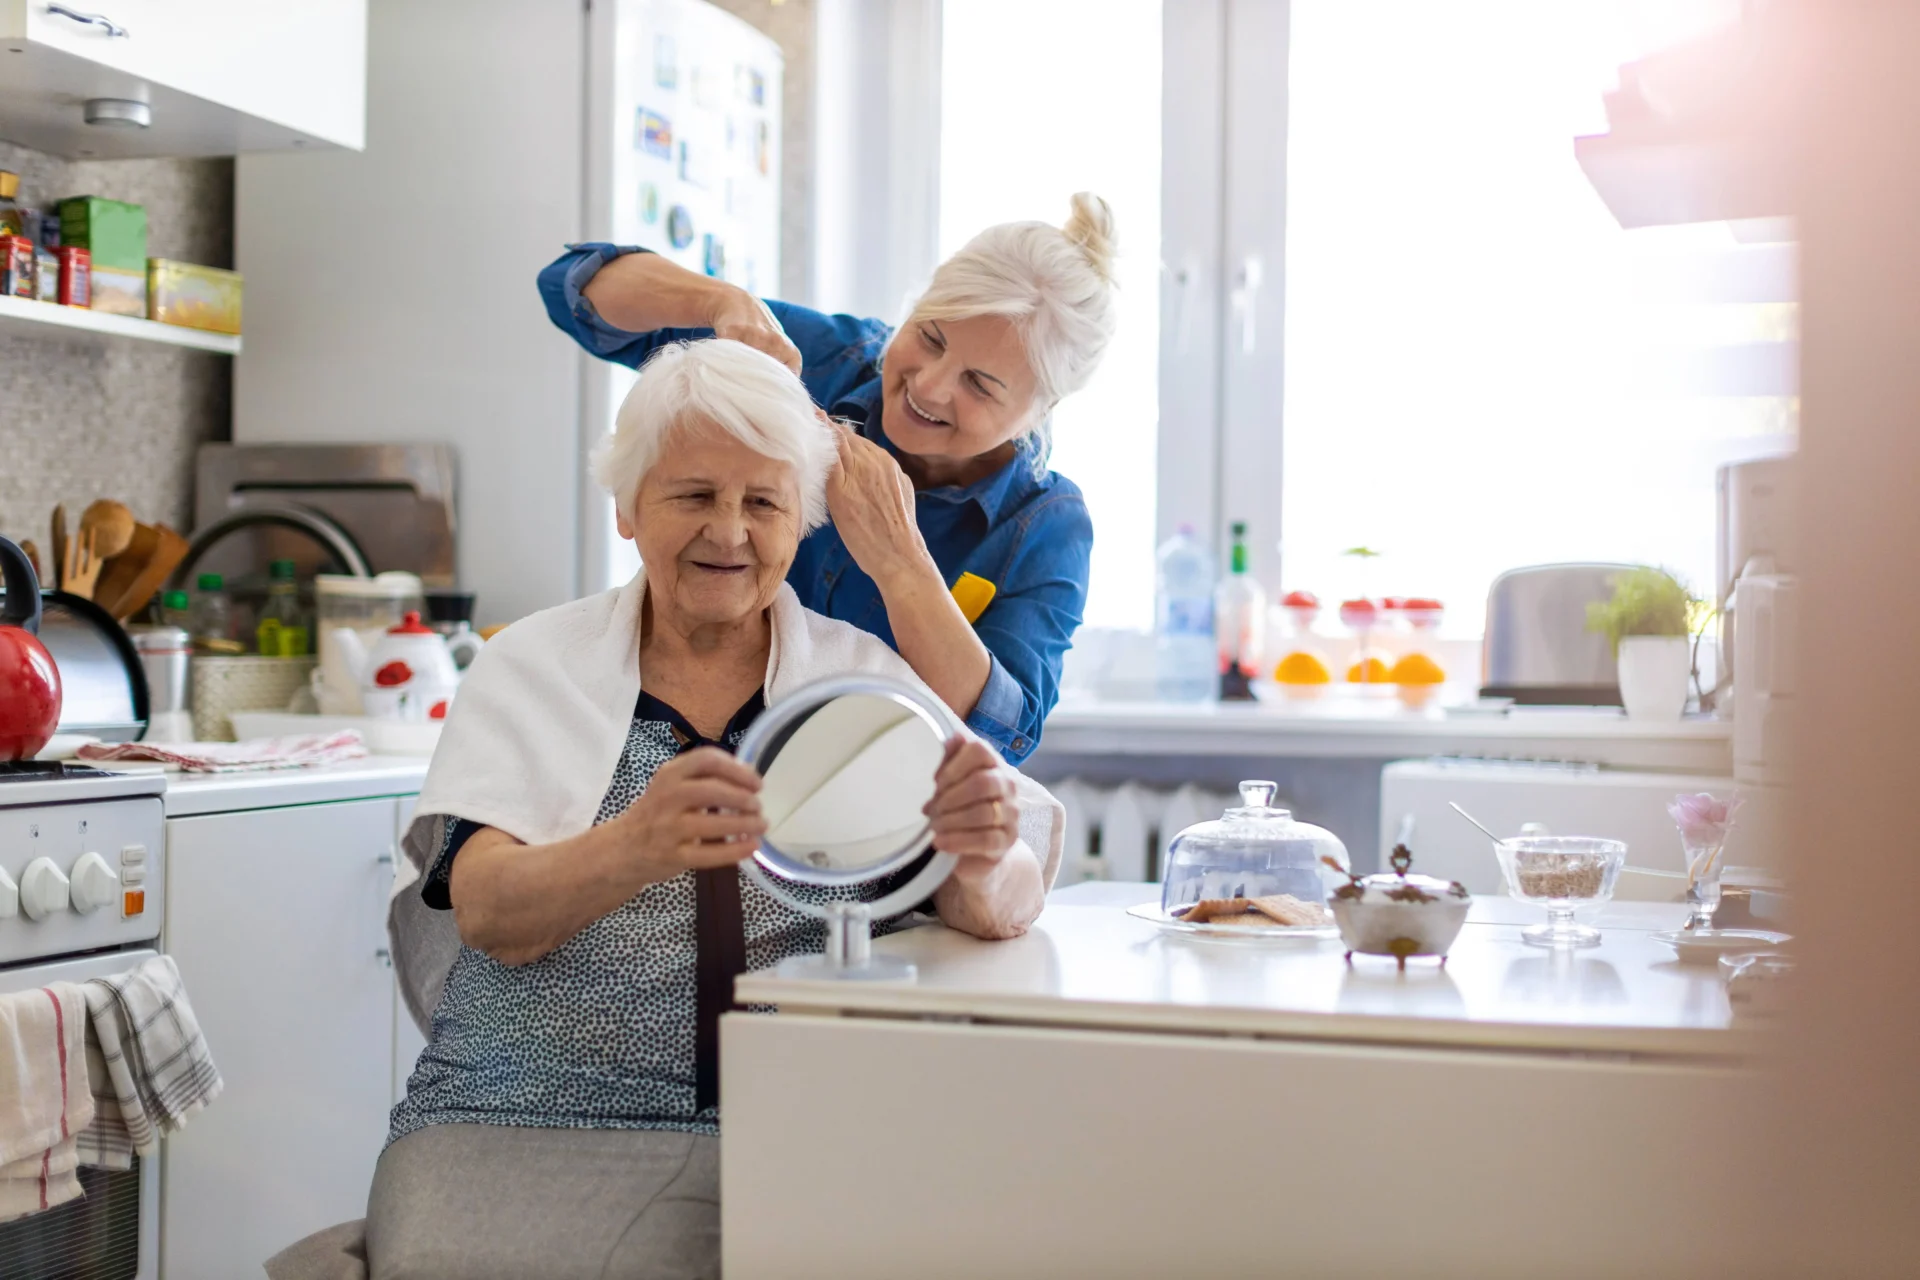 a caregiver combing a senior's hair